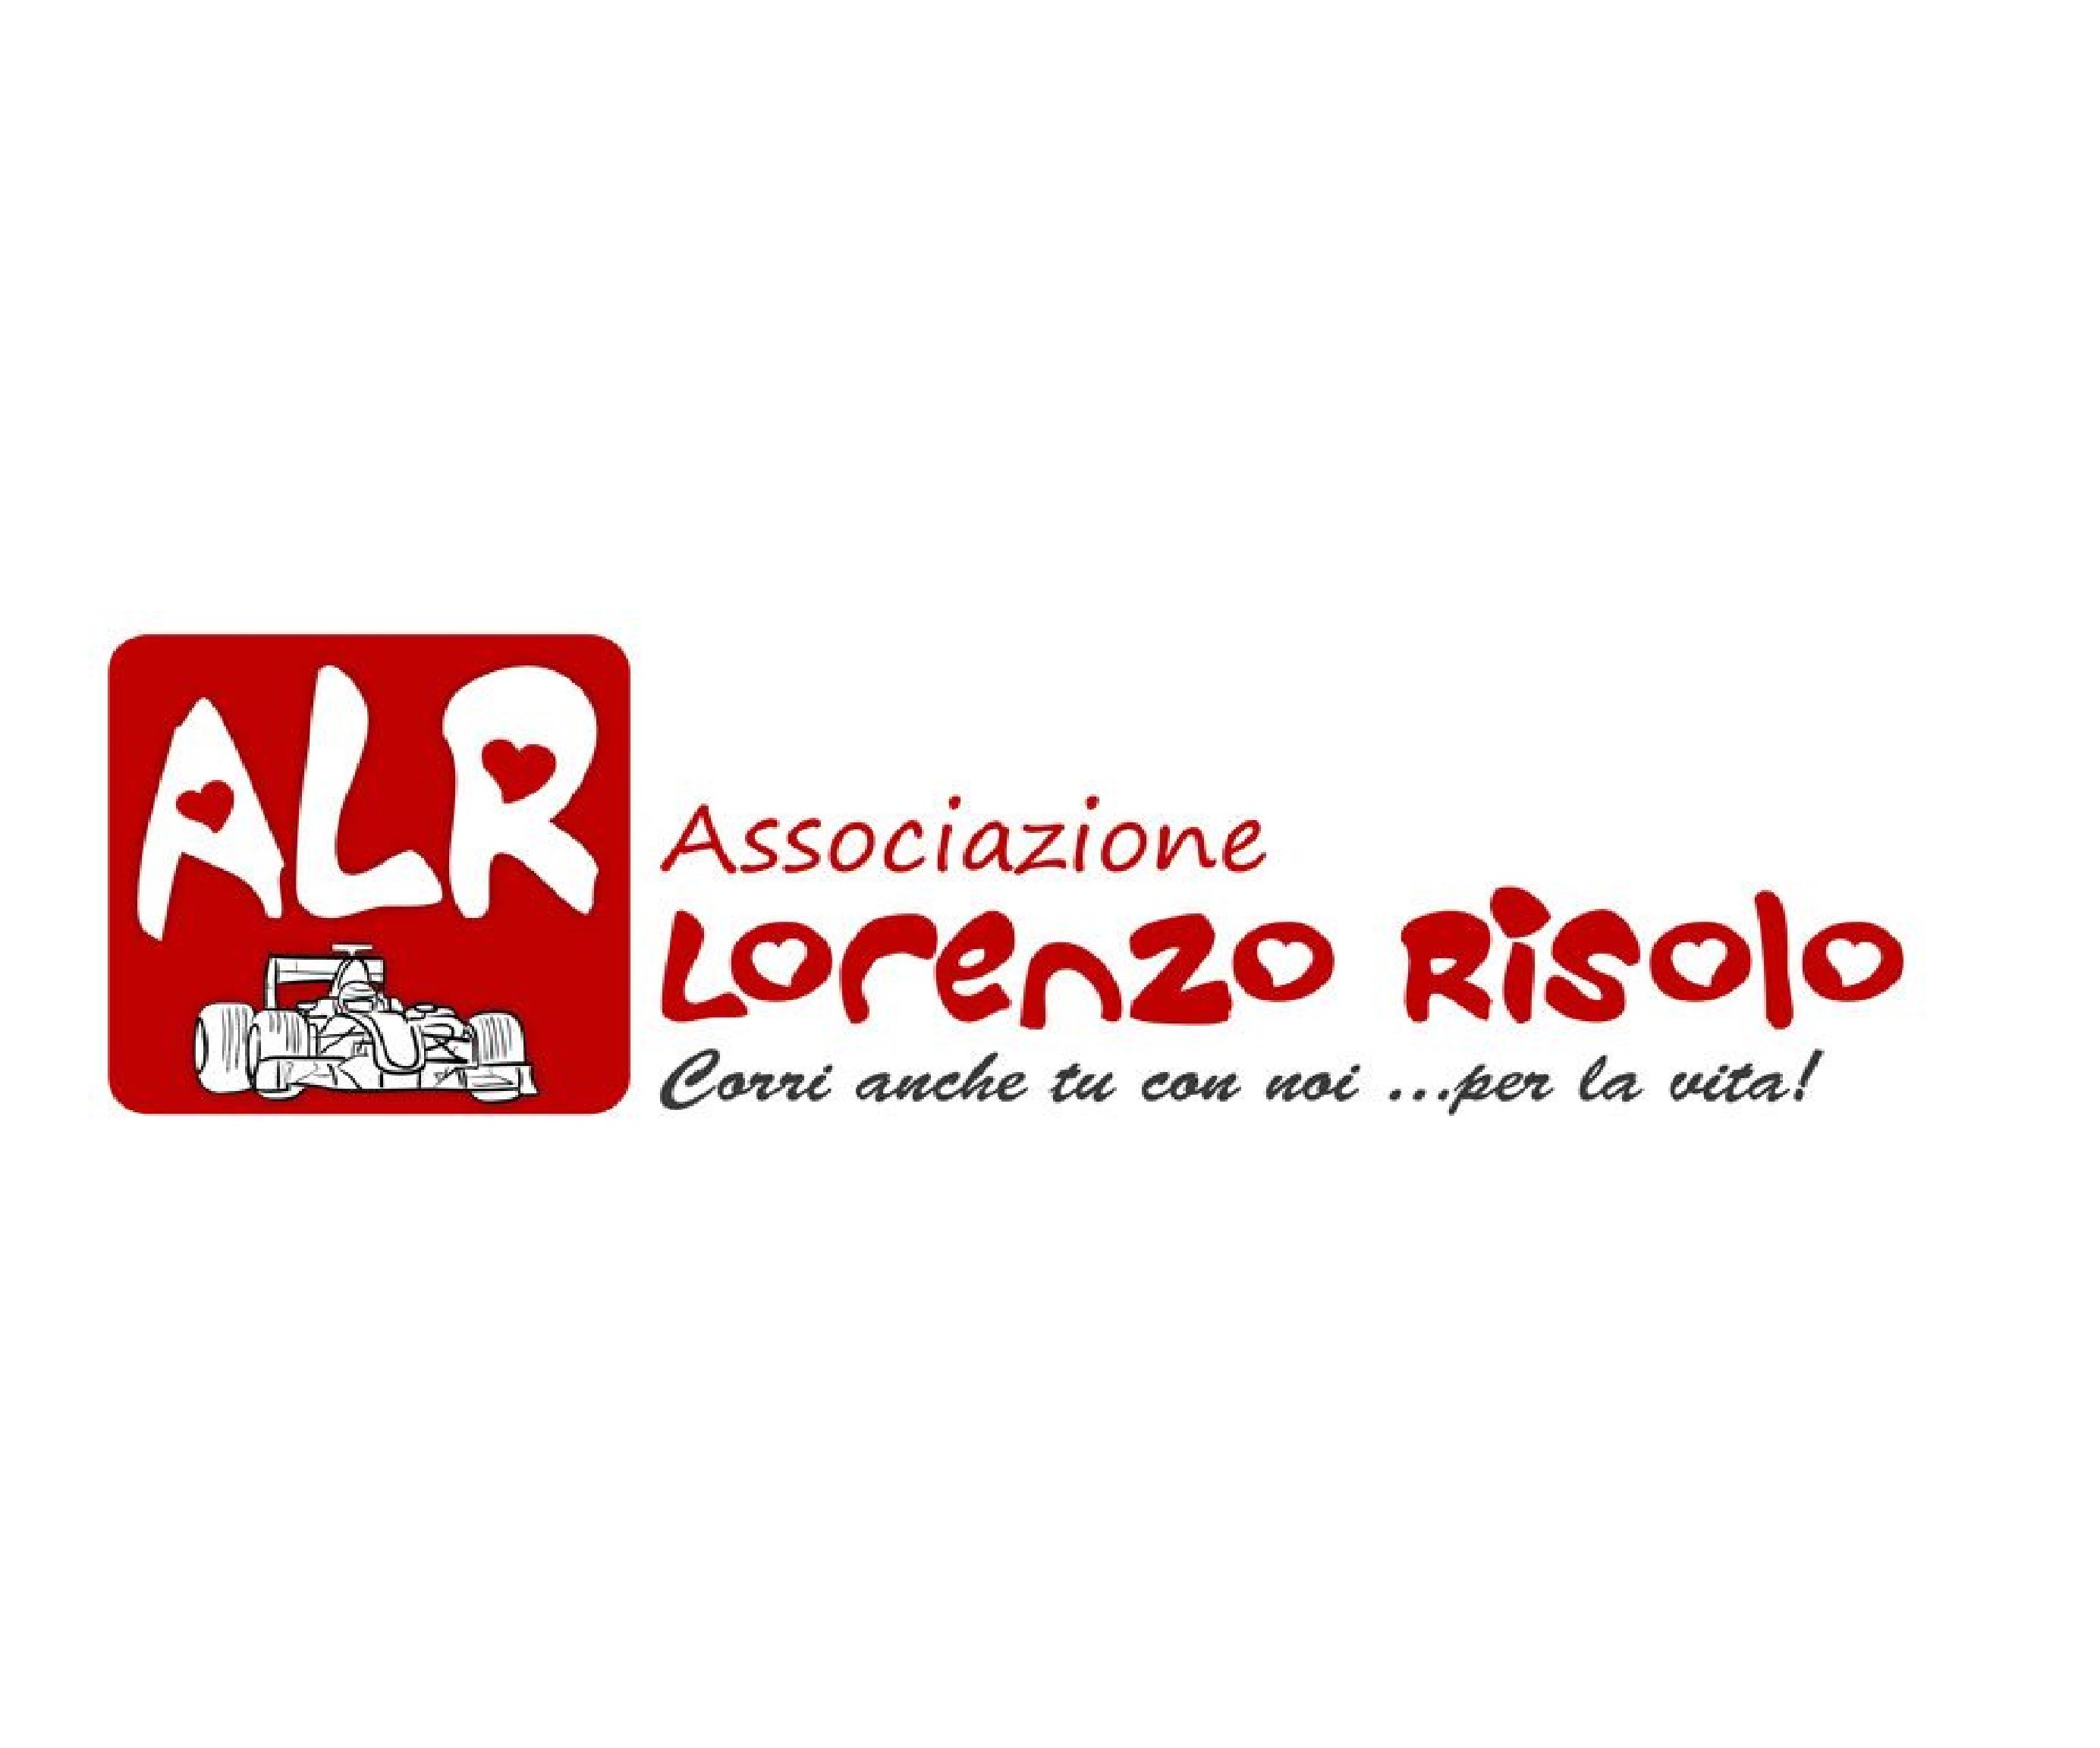 ALR - Associazione Lorenzo Risolo